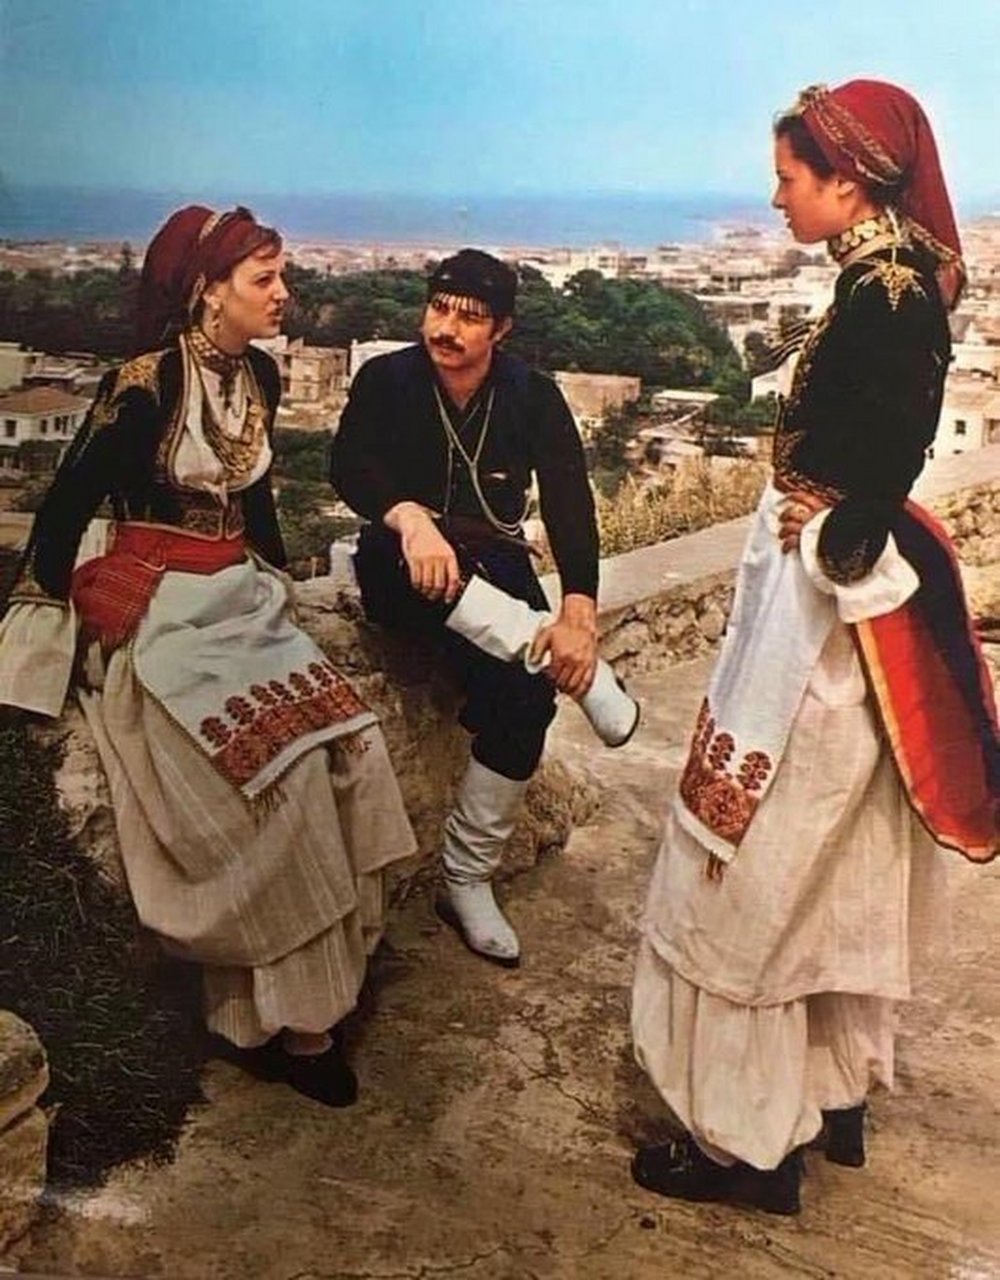 来自希腊克里特岛的传统服饰,女生的很仙气,男人的很有范哦!